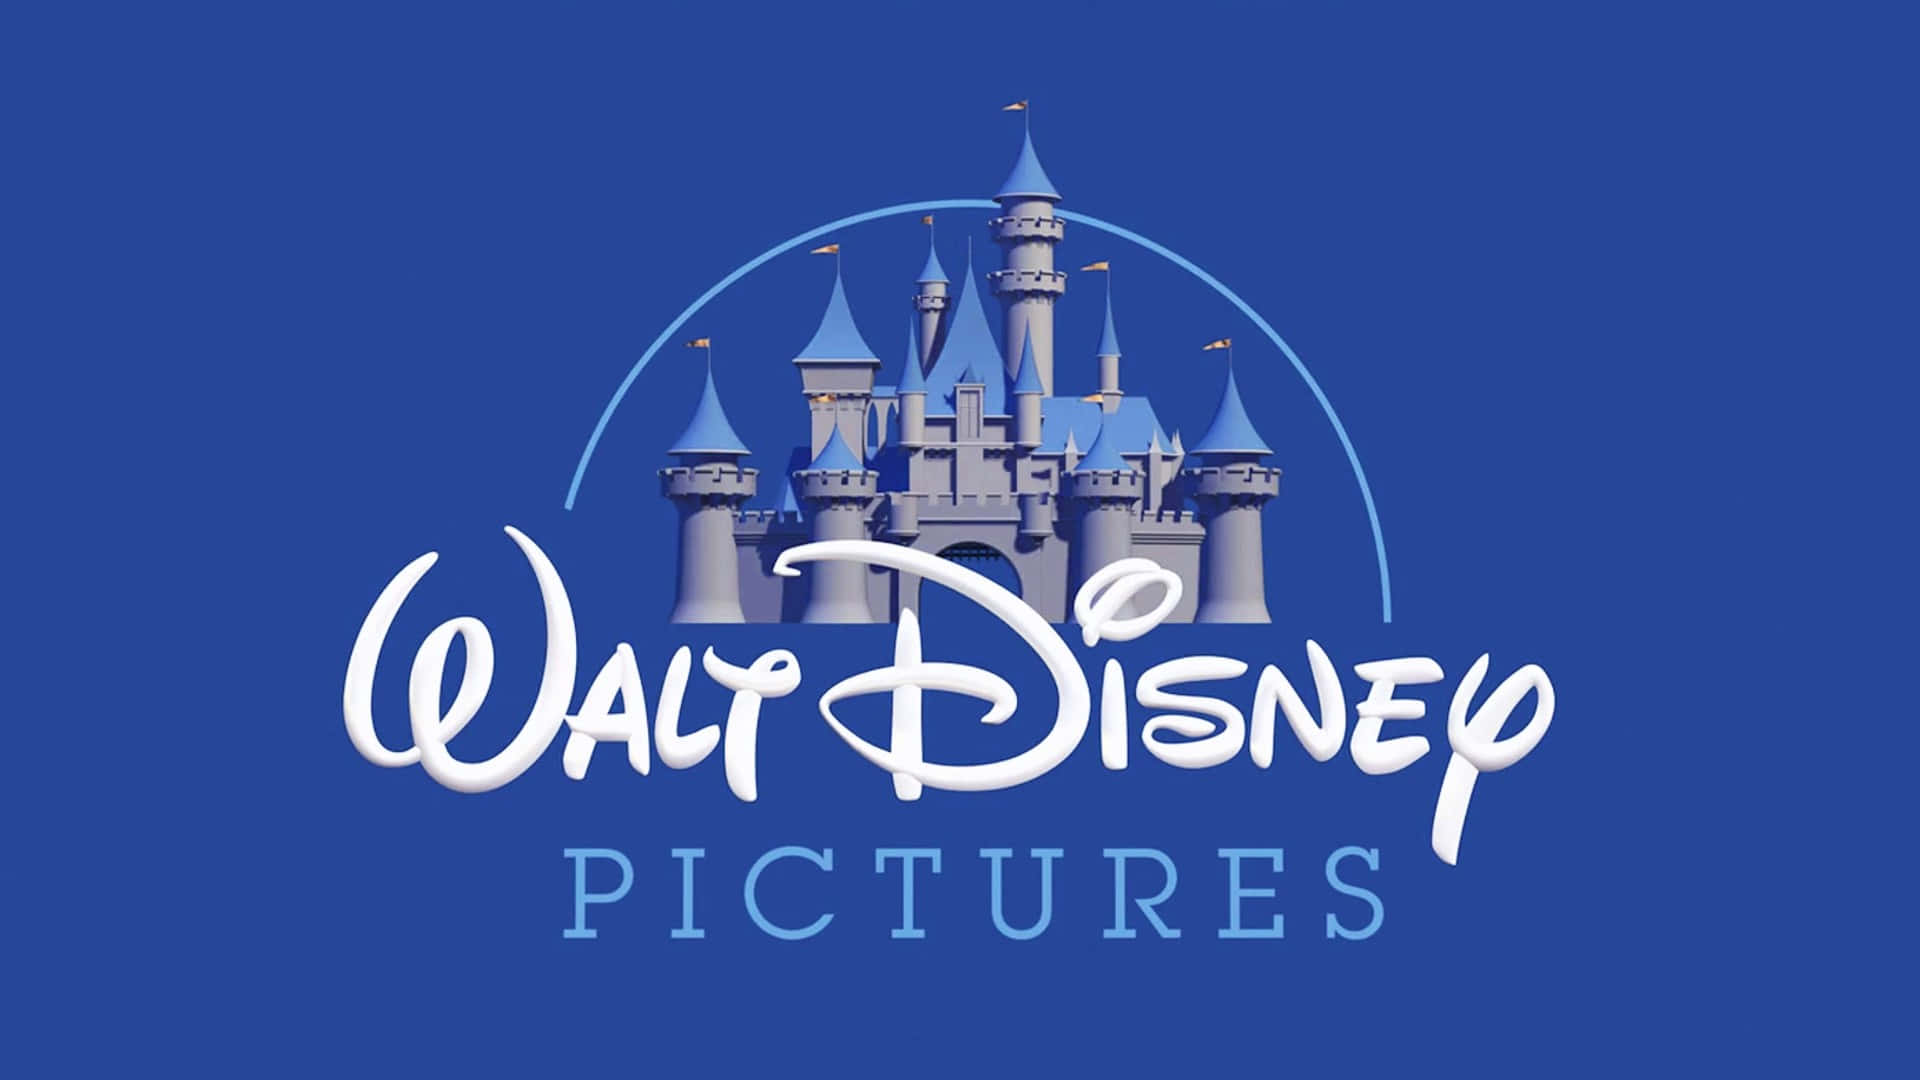 Bring Fantasien til Live med Walt Disneys klassiske scene